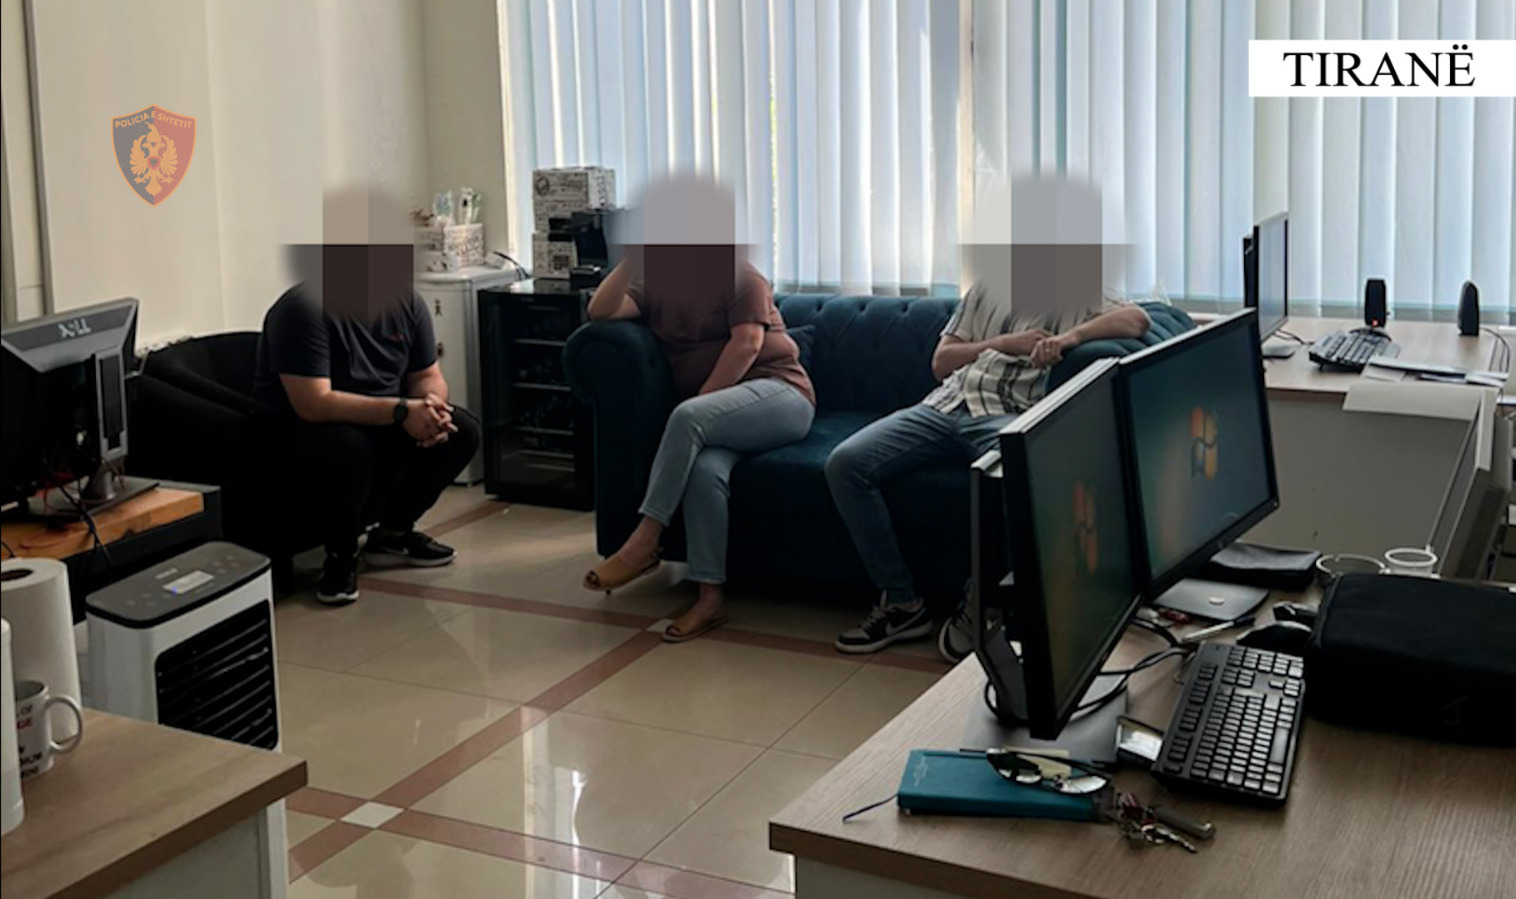 Mashtronin të huajt, që të investonin para në tregje fiktive, 6 të arrestuar në një call-centre në Tiranë, në kërkim administratori